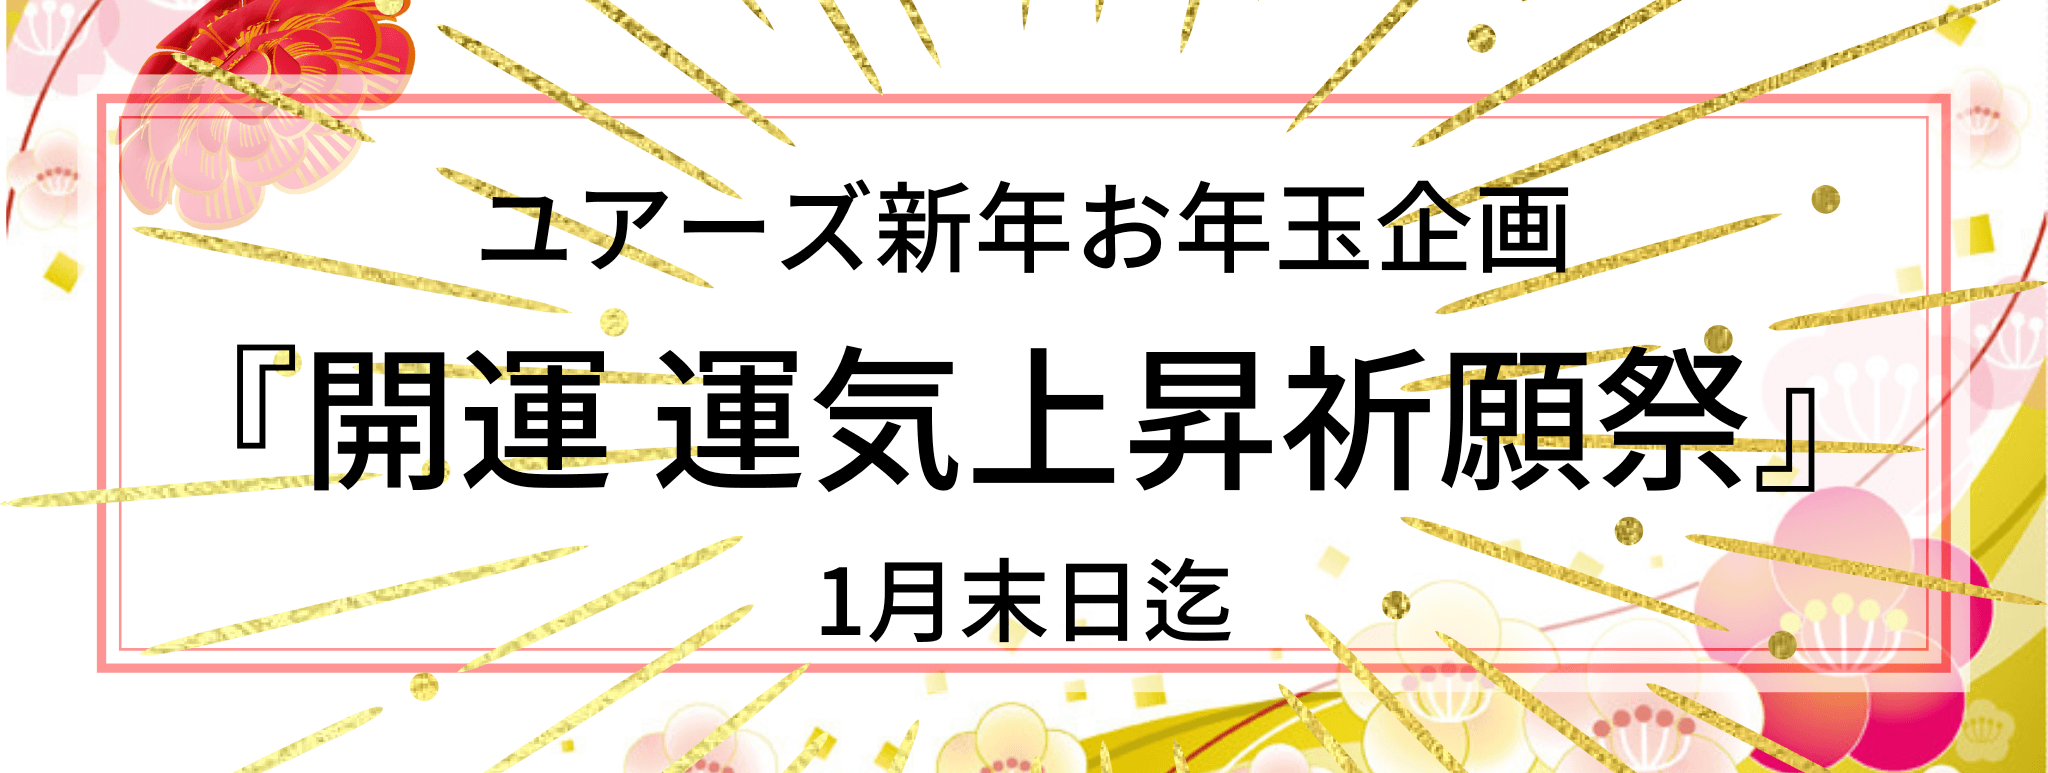 2023年新春お年玉キャンペーン『開運・運気上昇祈願』